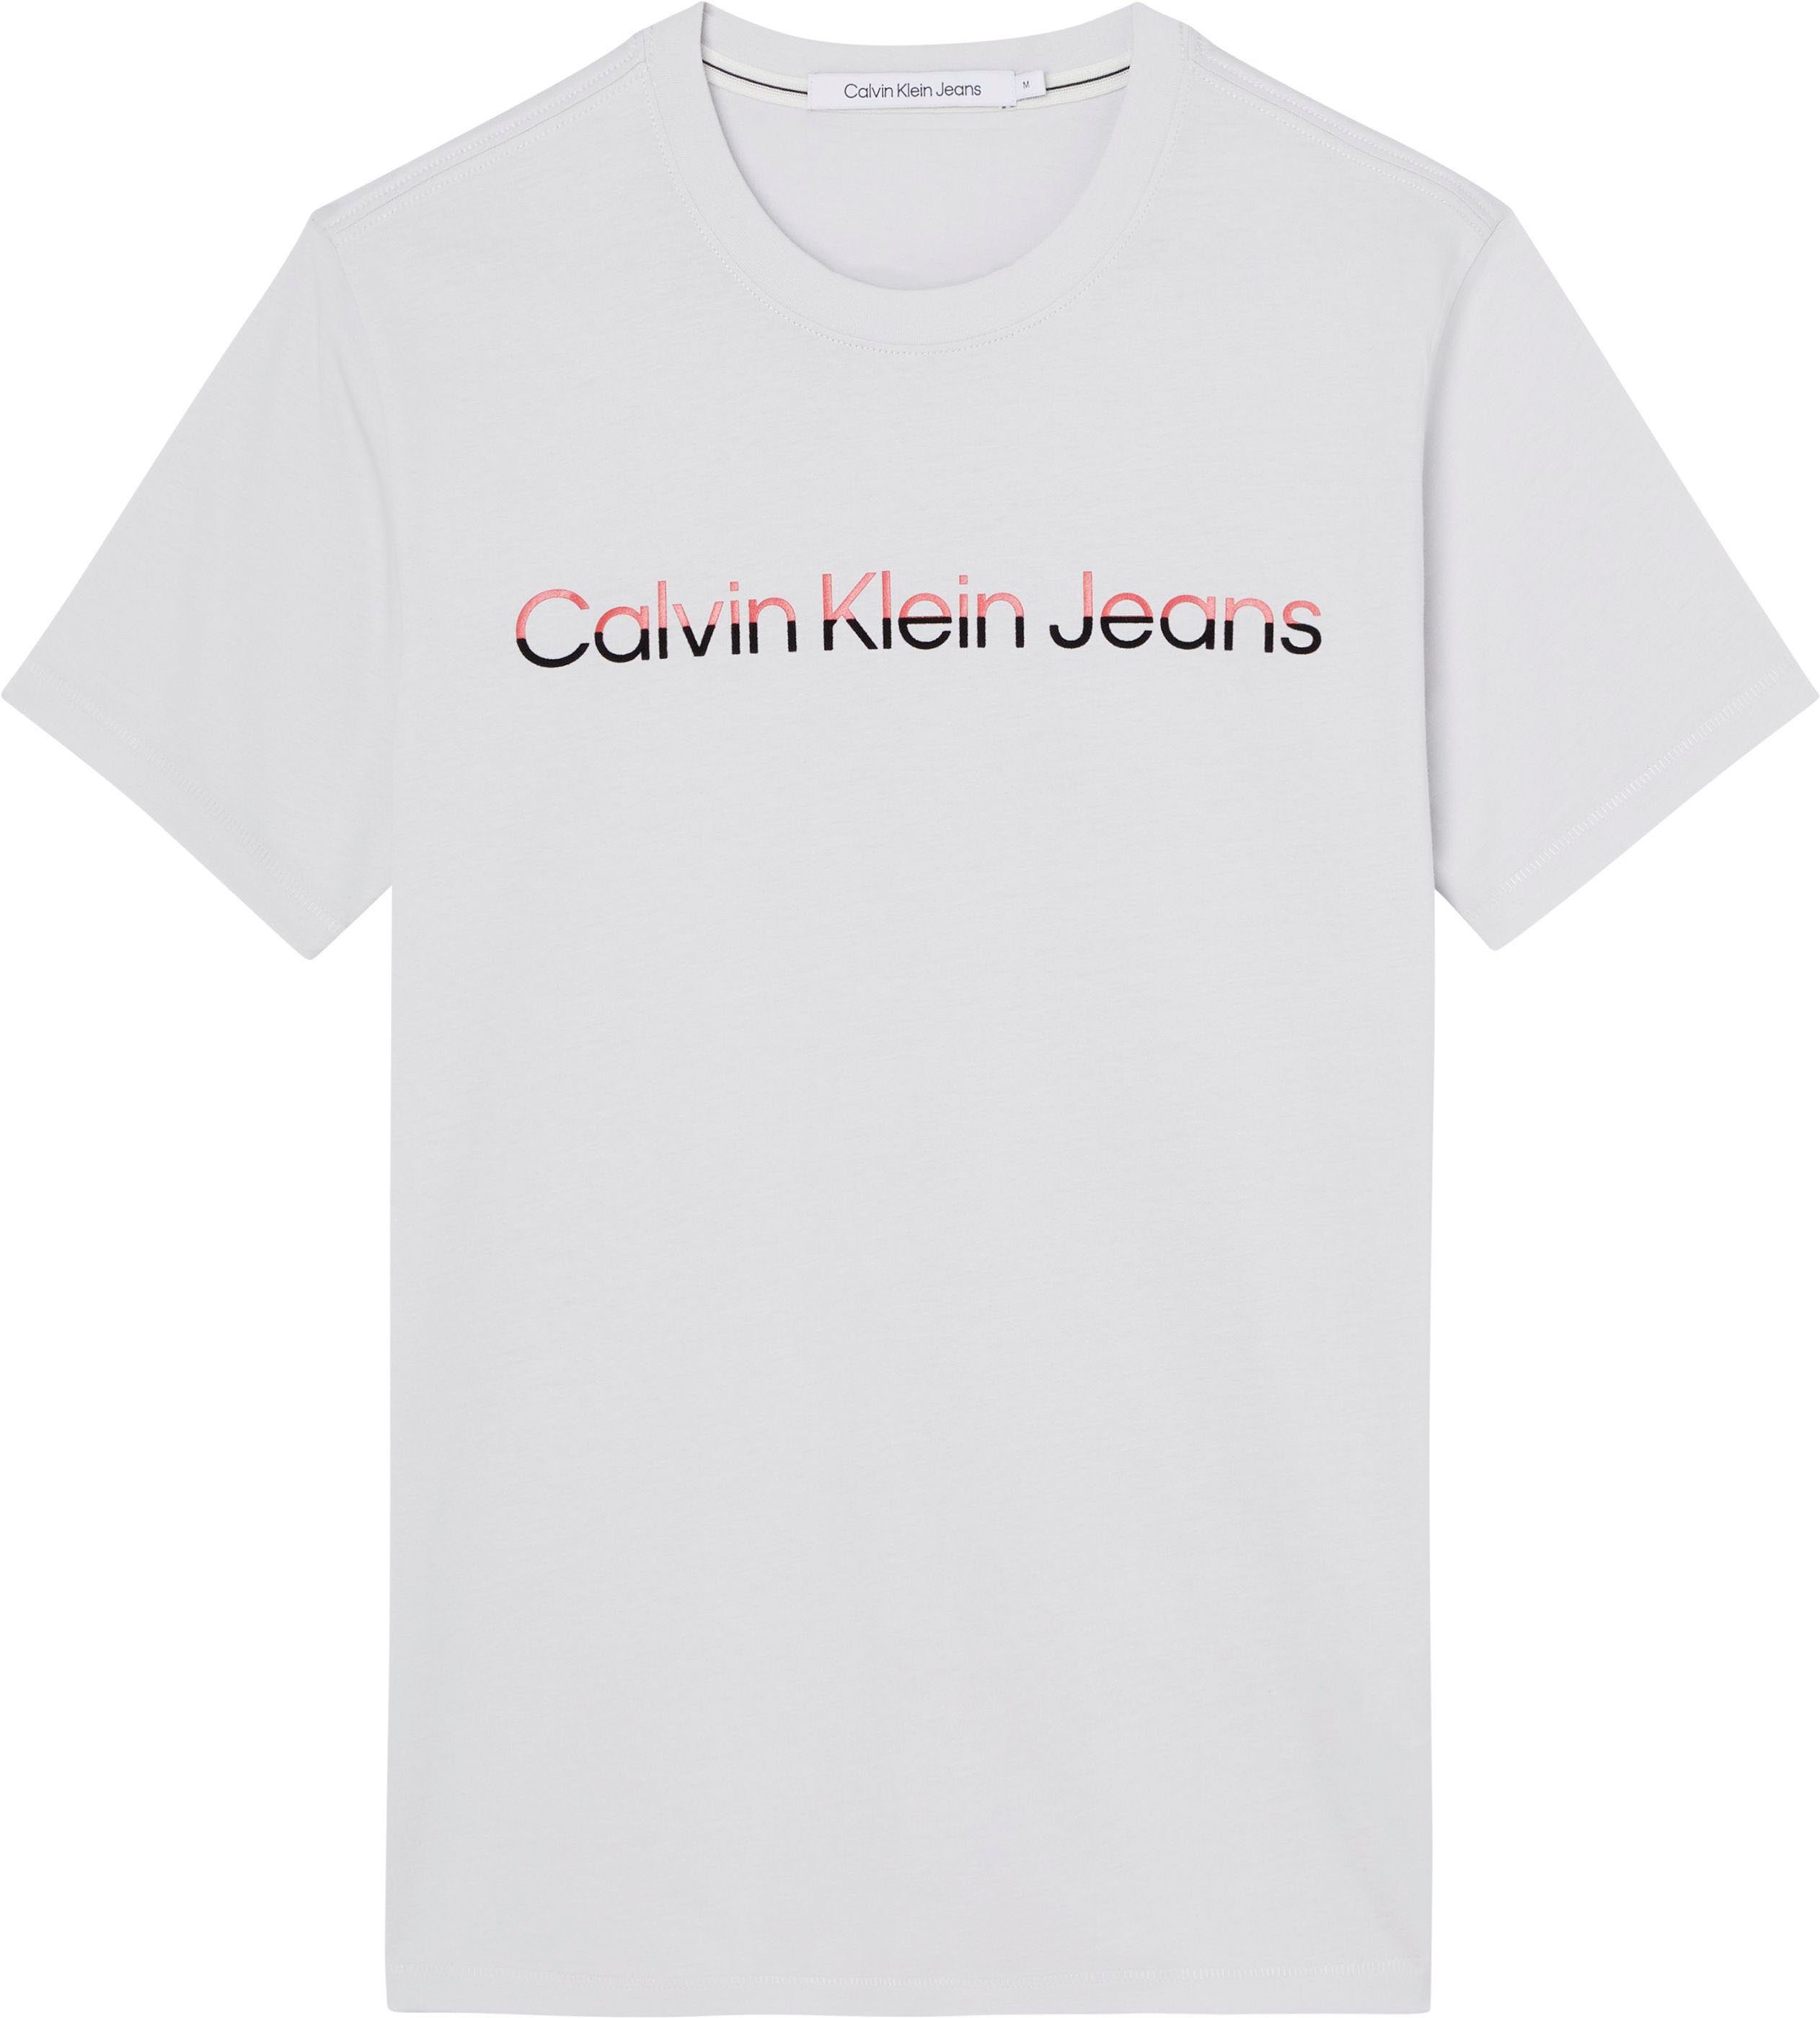 mit grau Logoschriftzug T-Shirt Jeans Shirt Klein INSTITUTIONA Calvin Klein MIXED Calvin